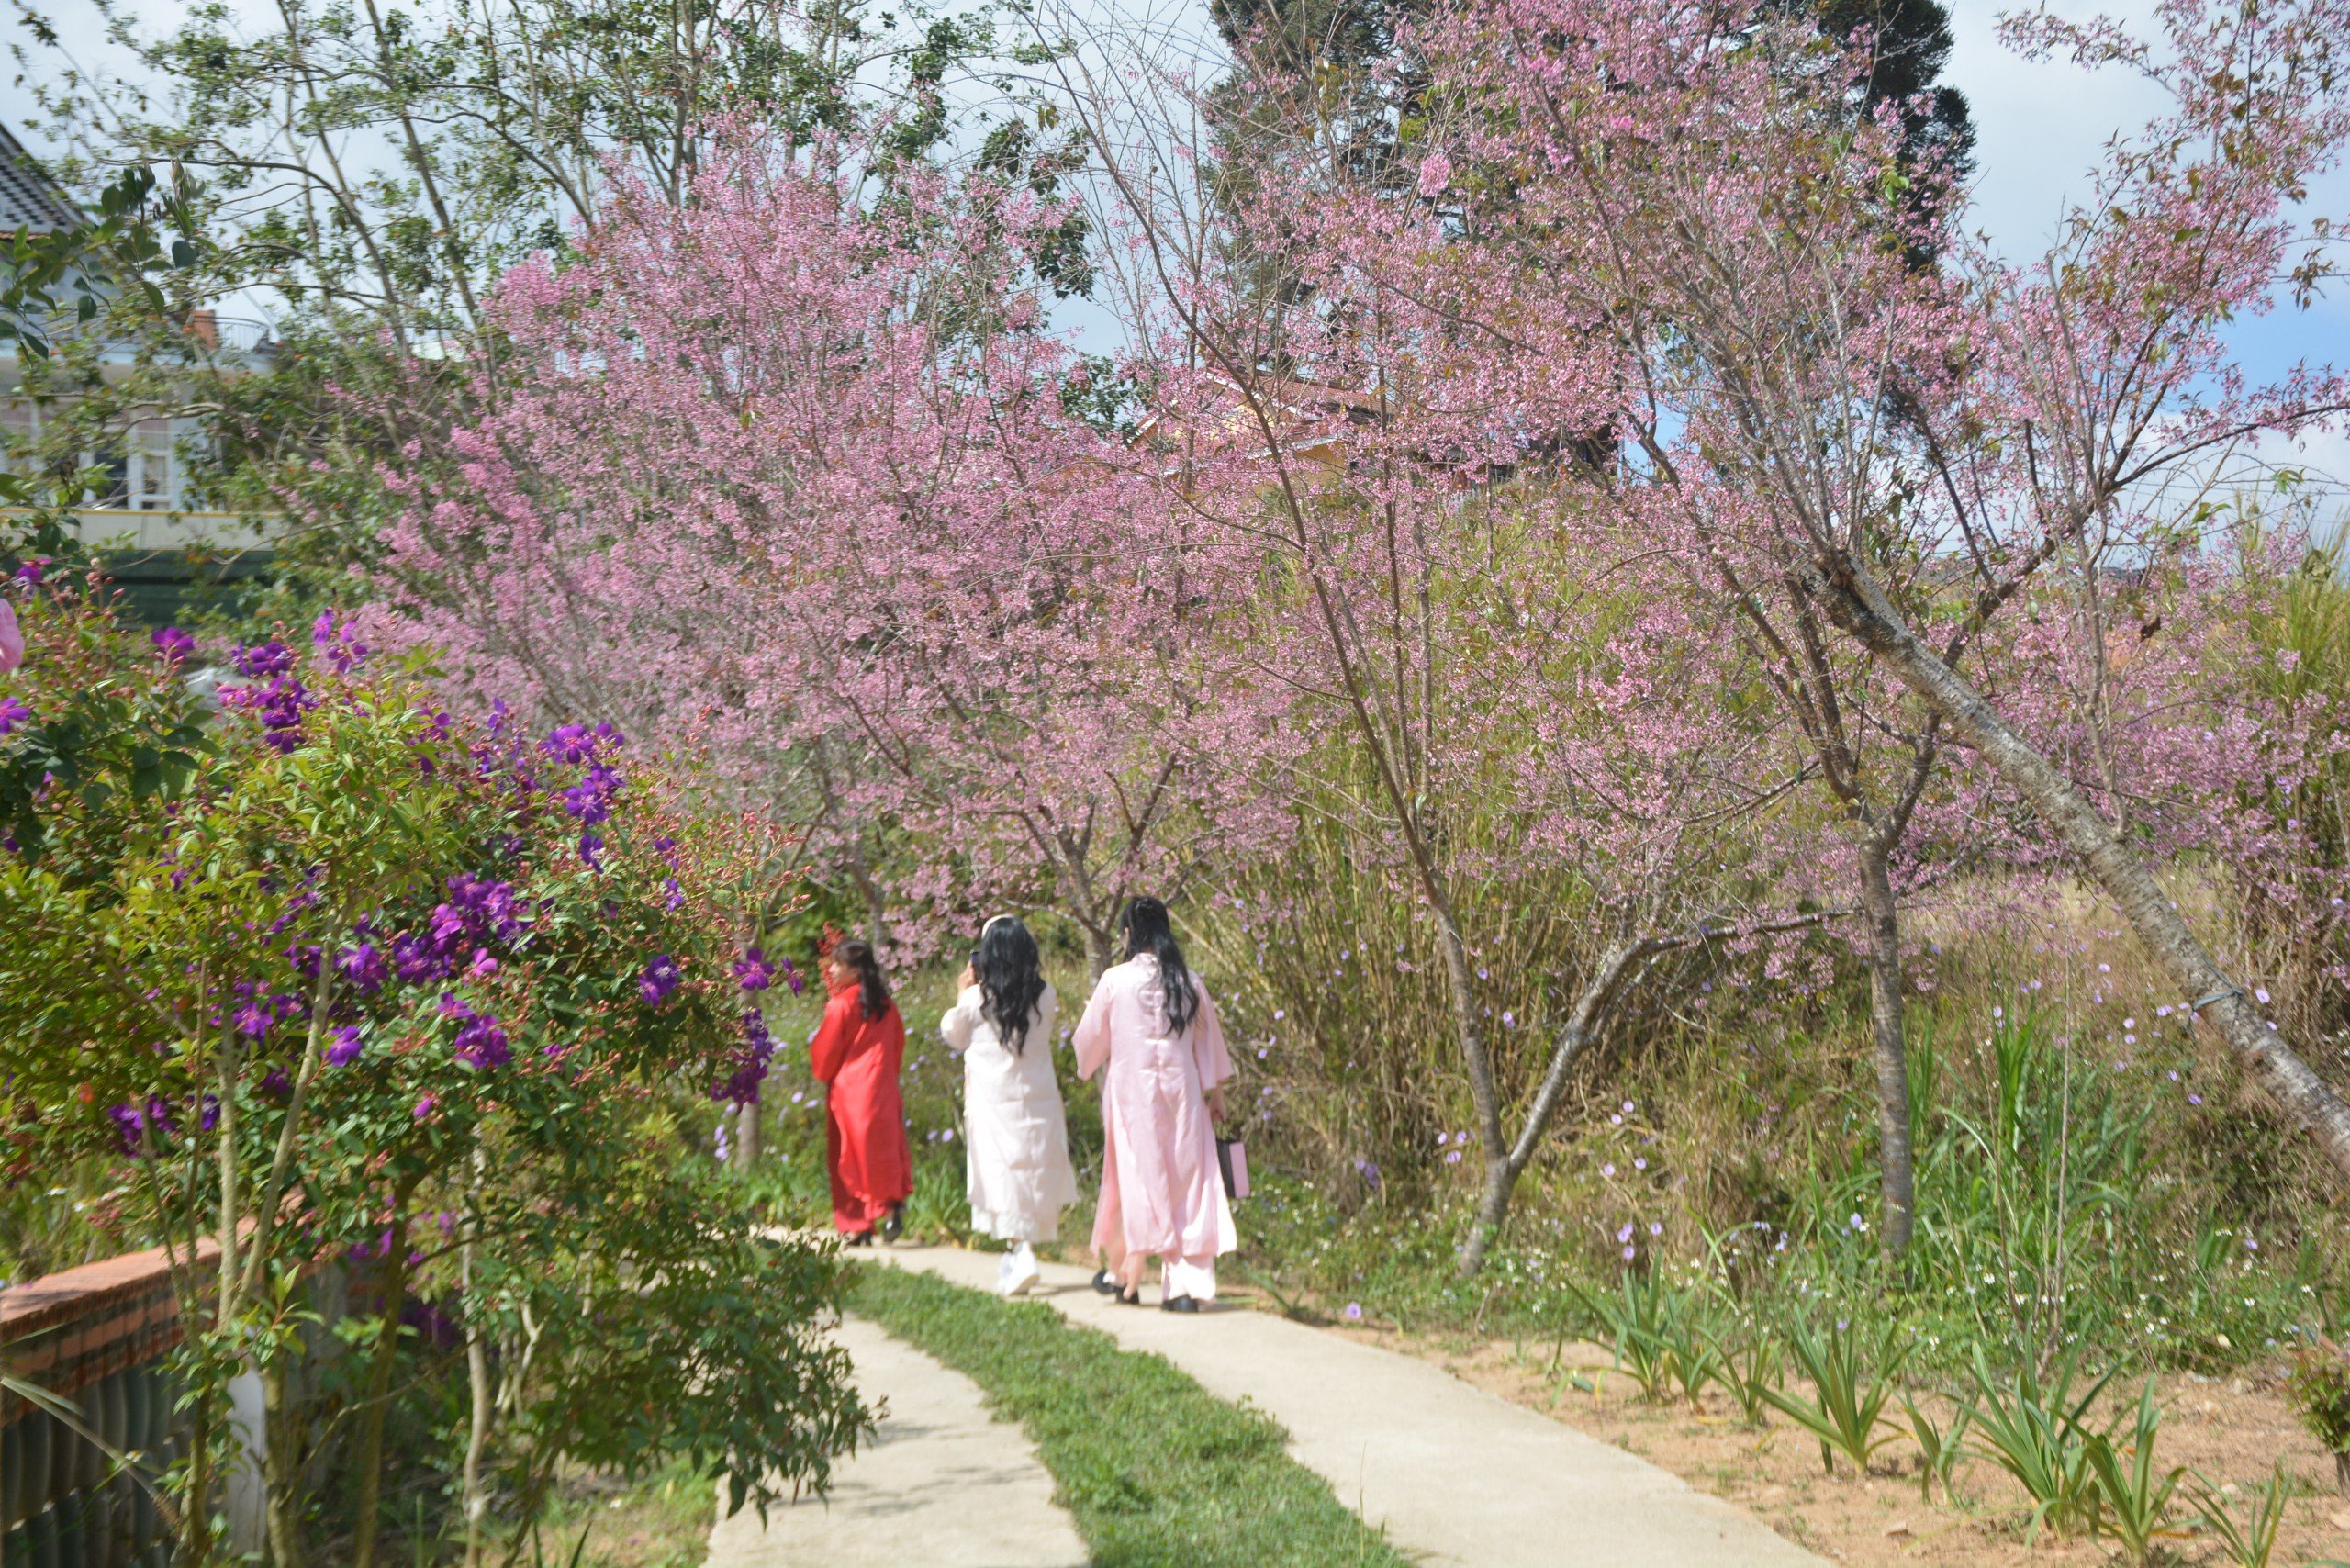 Anh Trọng Tùng - một người dân sống tại TP Đà Lạt cho biết: “Nhiều cây mai anh đào trong thành phố đã ra lộc non, không ra được hoa. Tuy nhiên, nhiều cây mai anh đào đang nở rộ cũng thu hút nhiều du khách“. 